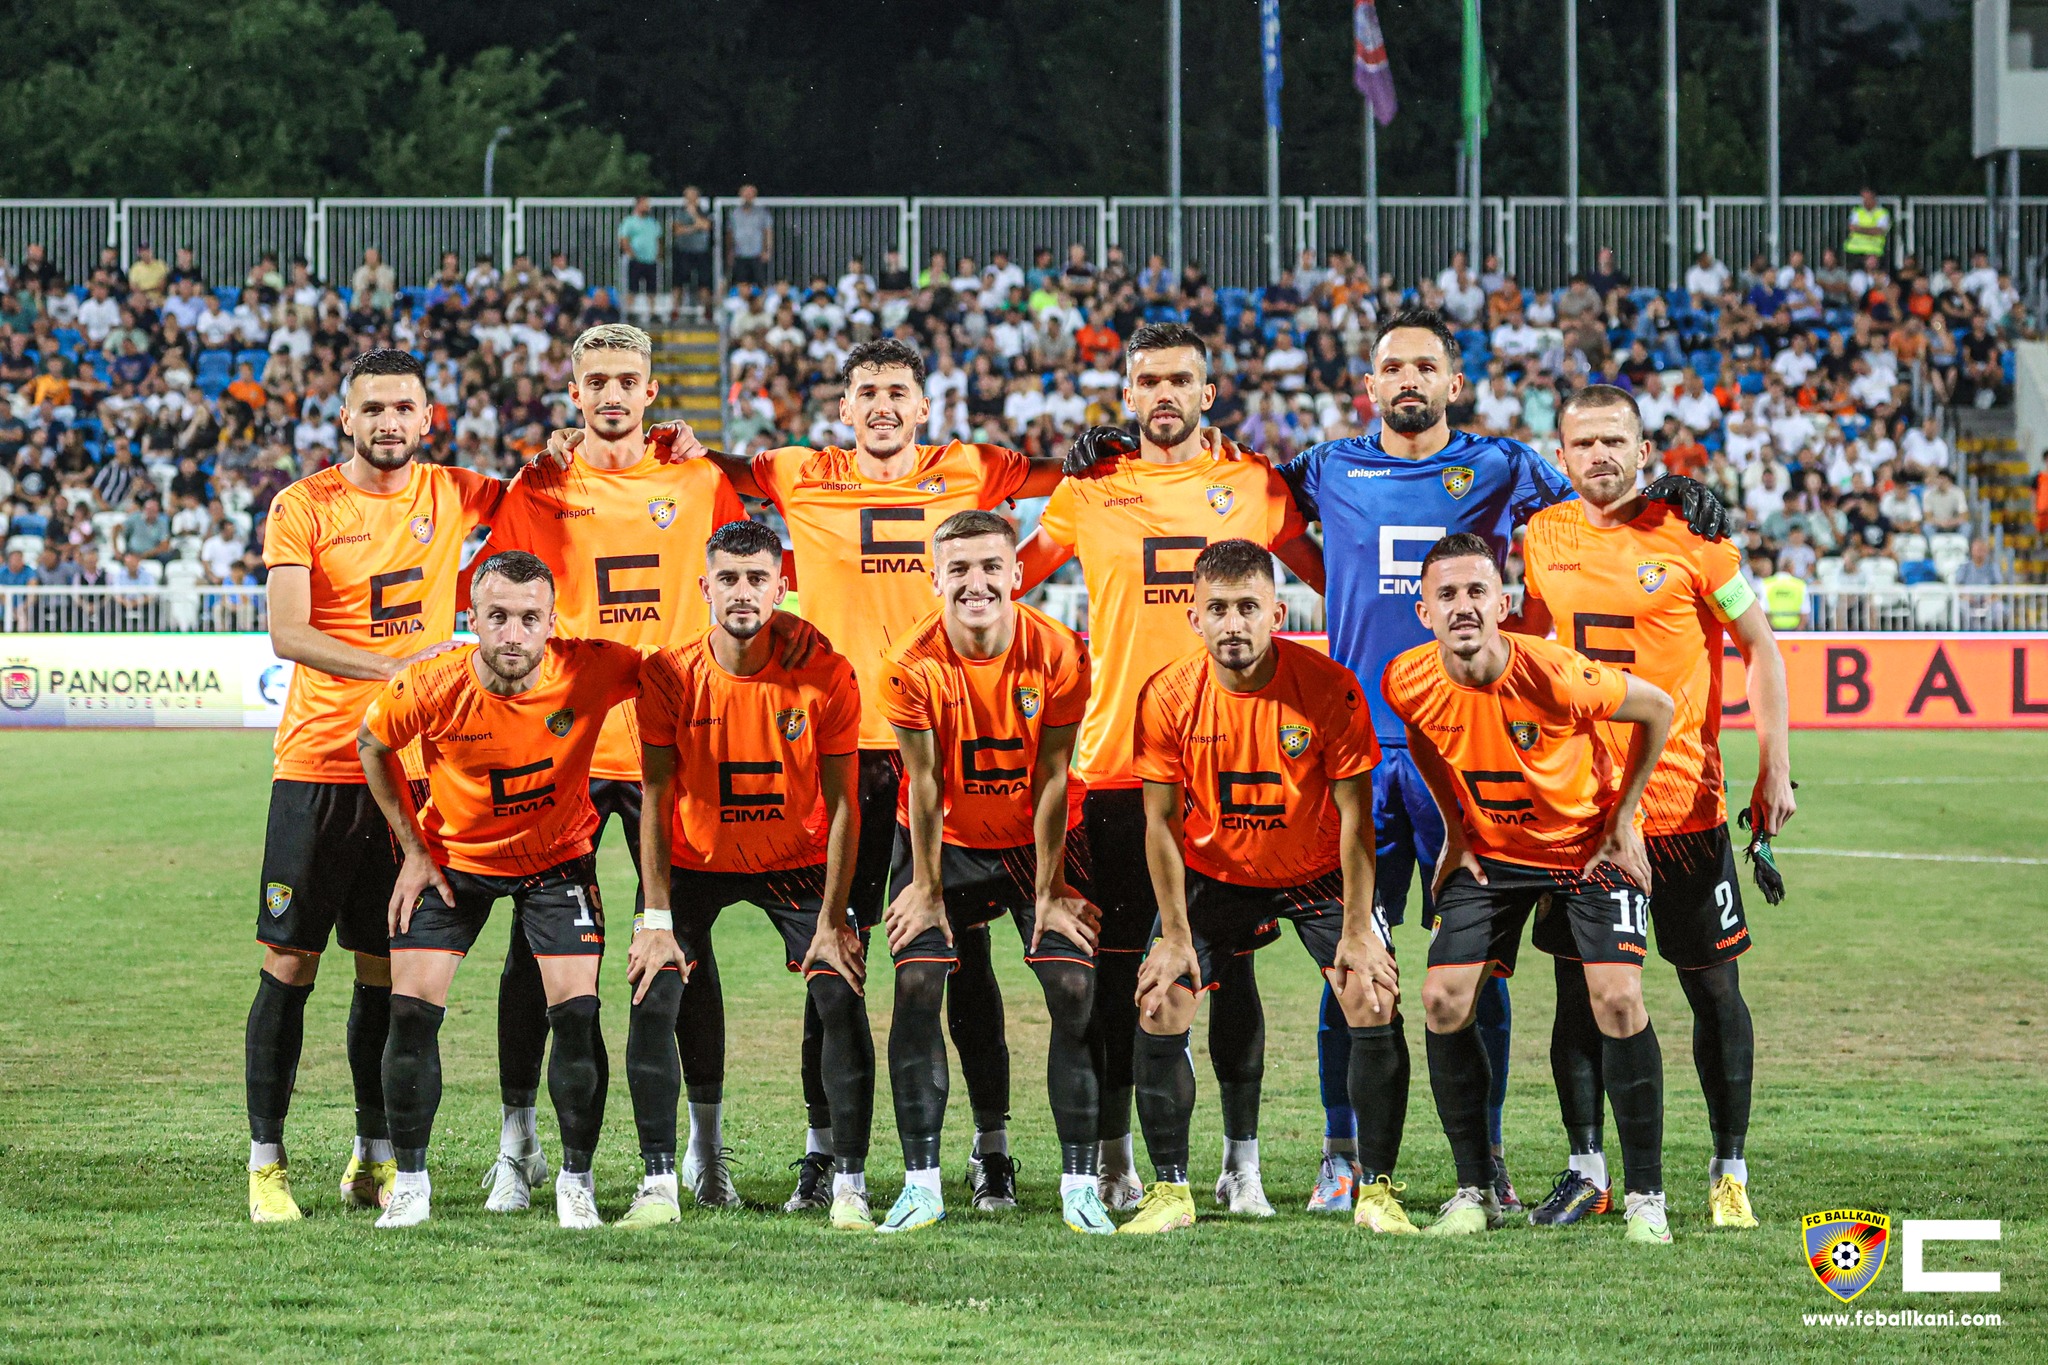 “Djemtë e Suharekës” sonte përballen me FC Larne, kërkojnë kualifikimin tutje në Ligën e Konferencës